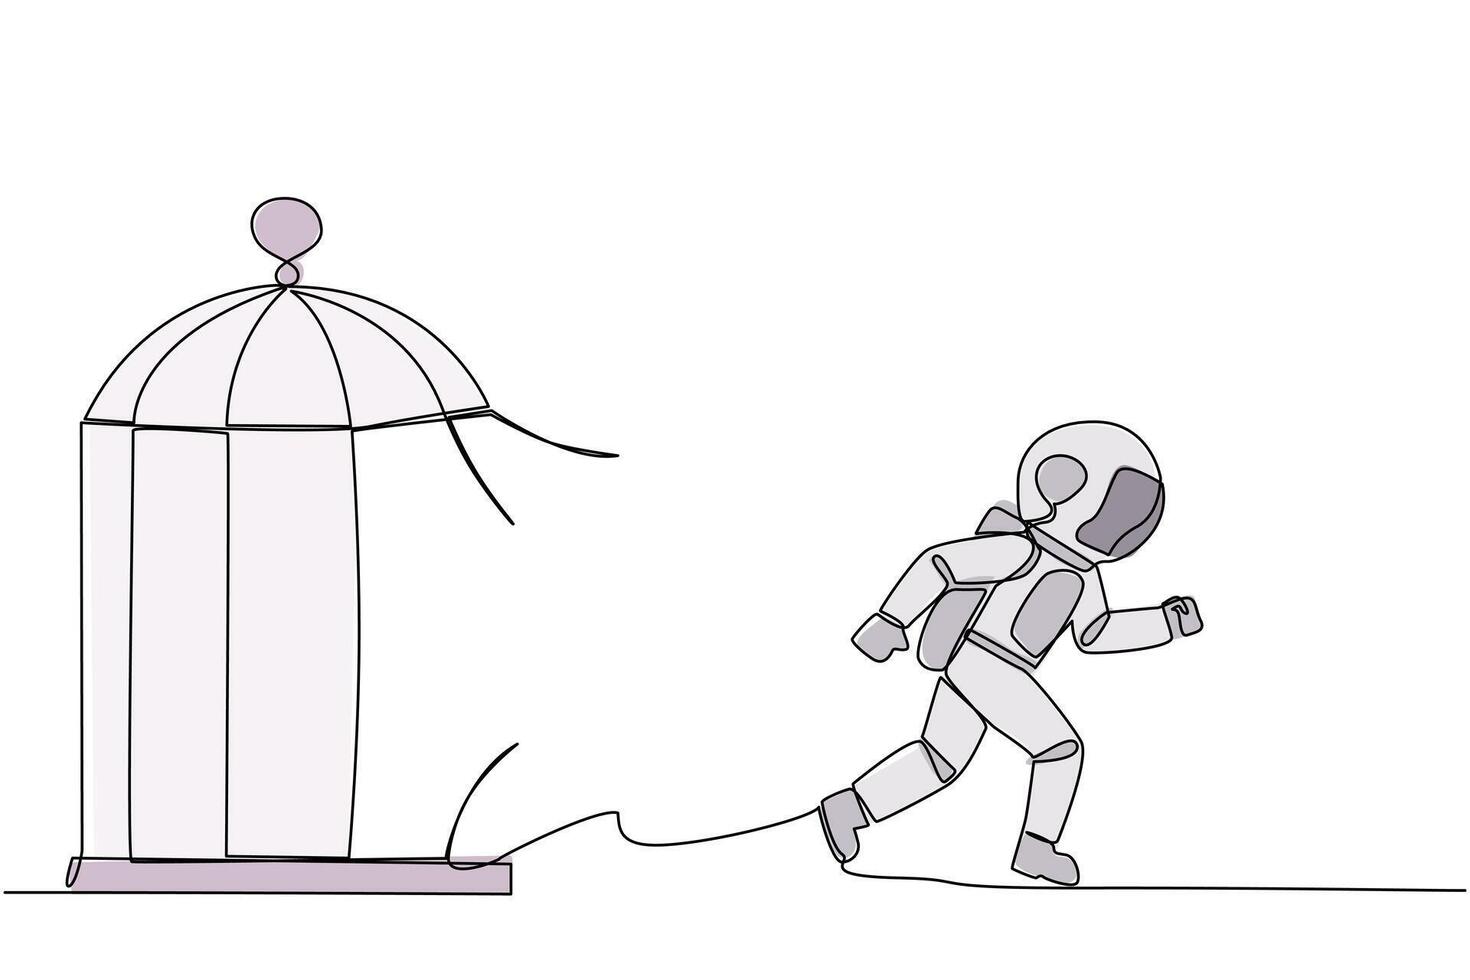 single een lijn tekening jong astronaut gevangen in de kooi rennen door de kooi. metafoor dringt door de maximaal begrenzing van zelf. verlangen naar slagen. doorlopend lijn ontwerp grafisch illustratie vector